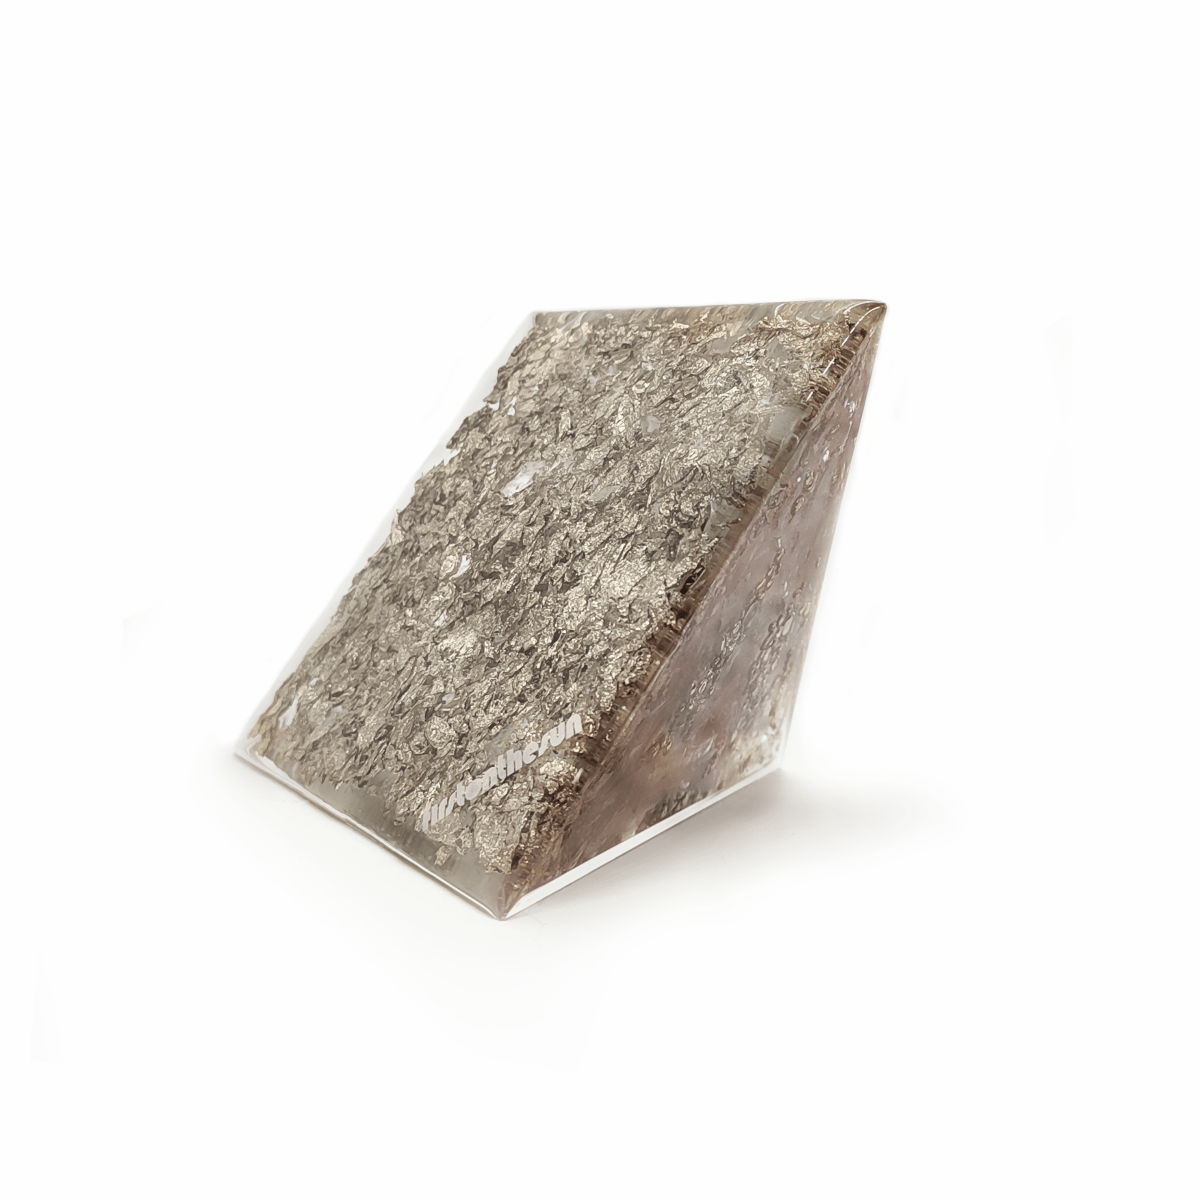 Bodenfläche eines firstonthesun Orgoniten. Die Unterseite dieser hellbraunen Orgonit Pyramide weist silberne Metallic Elemente auf.